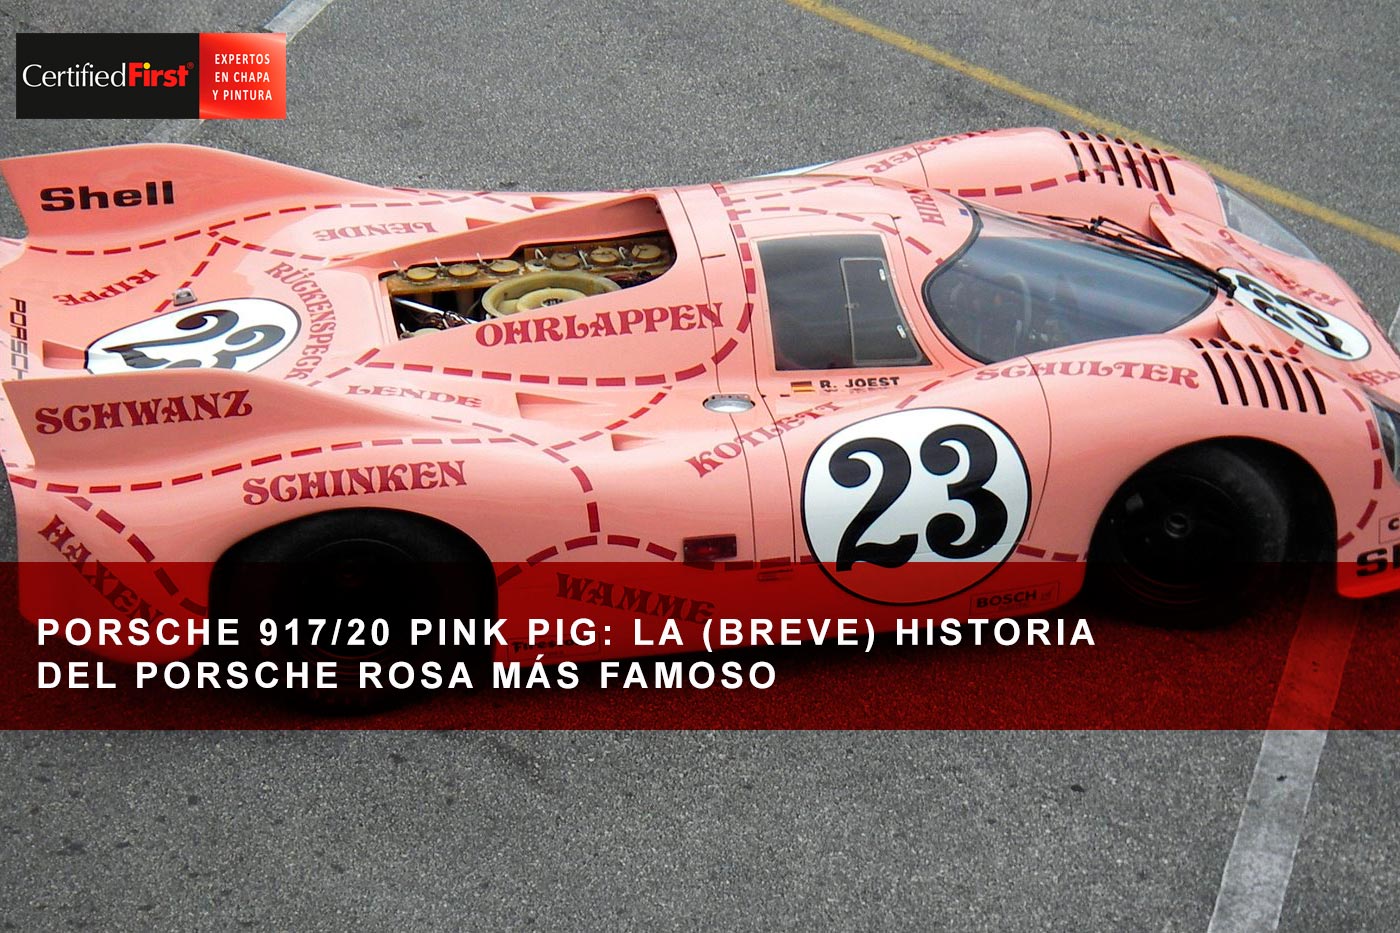 Porsche 917/20 Pink Pig: la (breve) historia del Porsche rosa más famoso